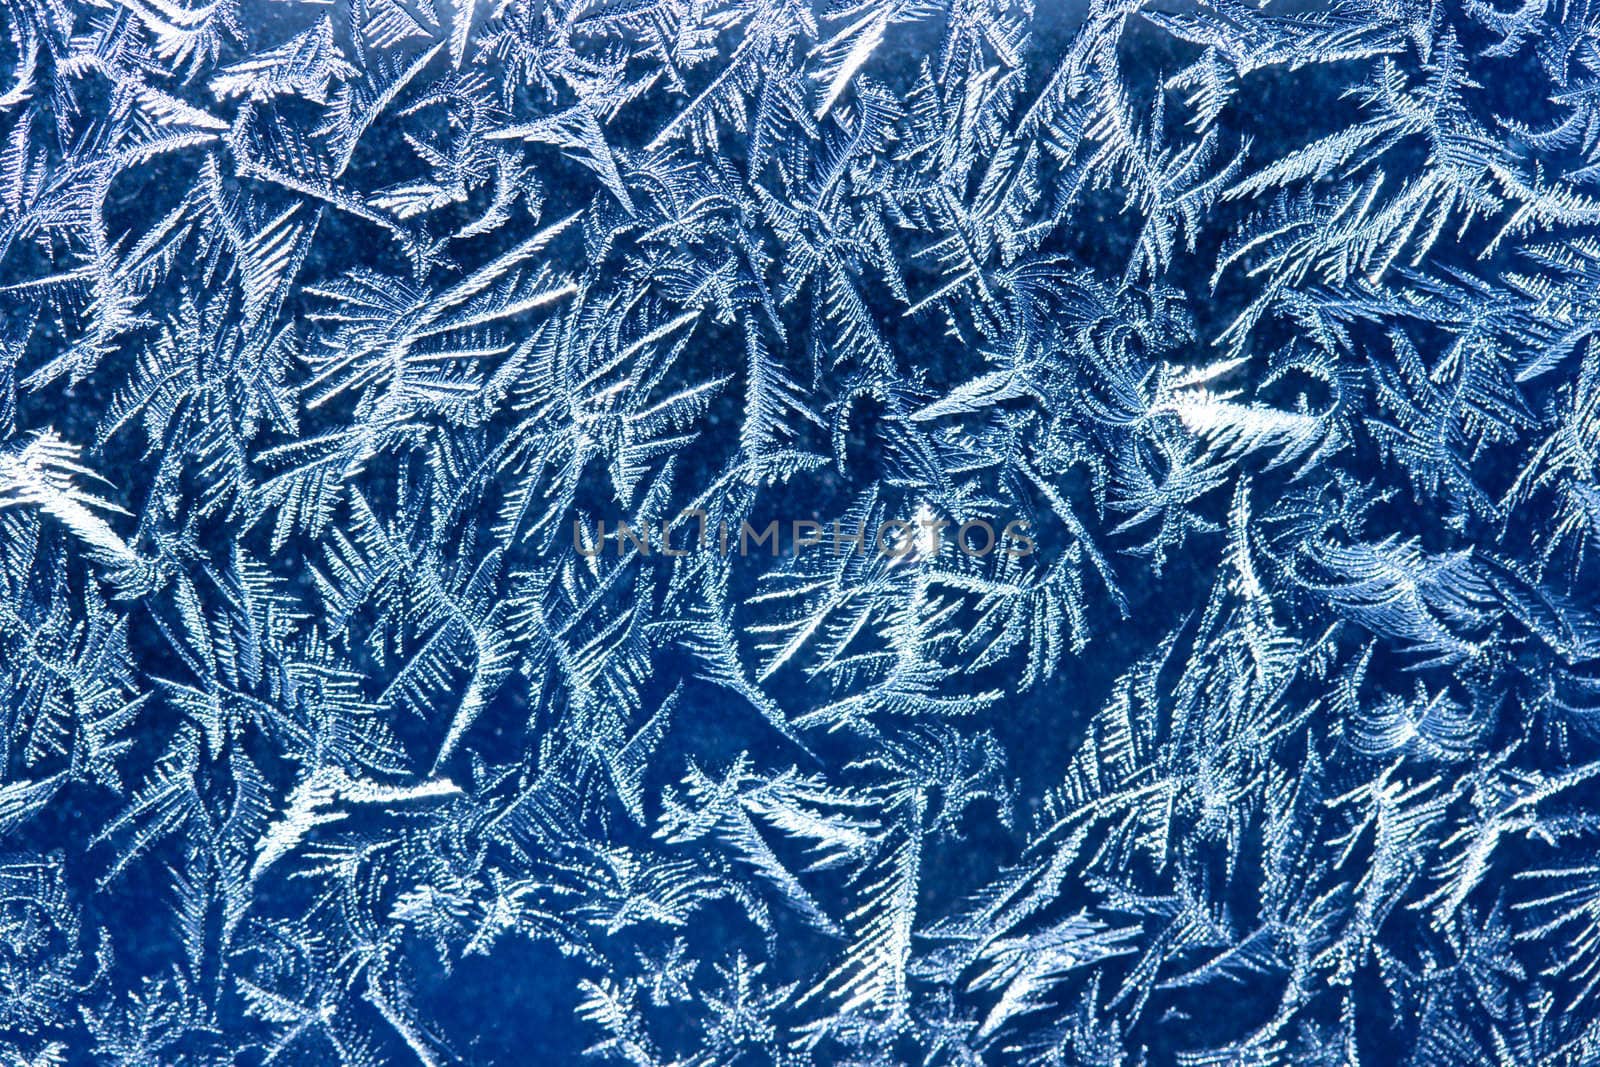 Frost patterns on window glass in winter